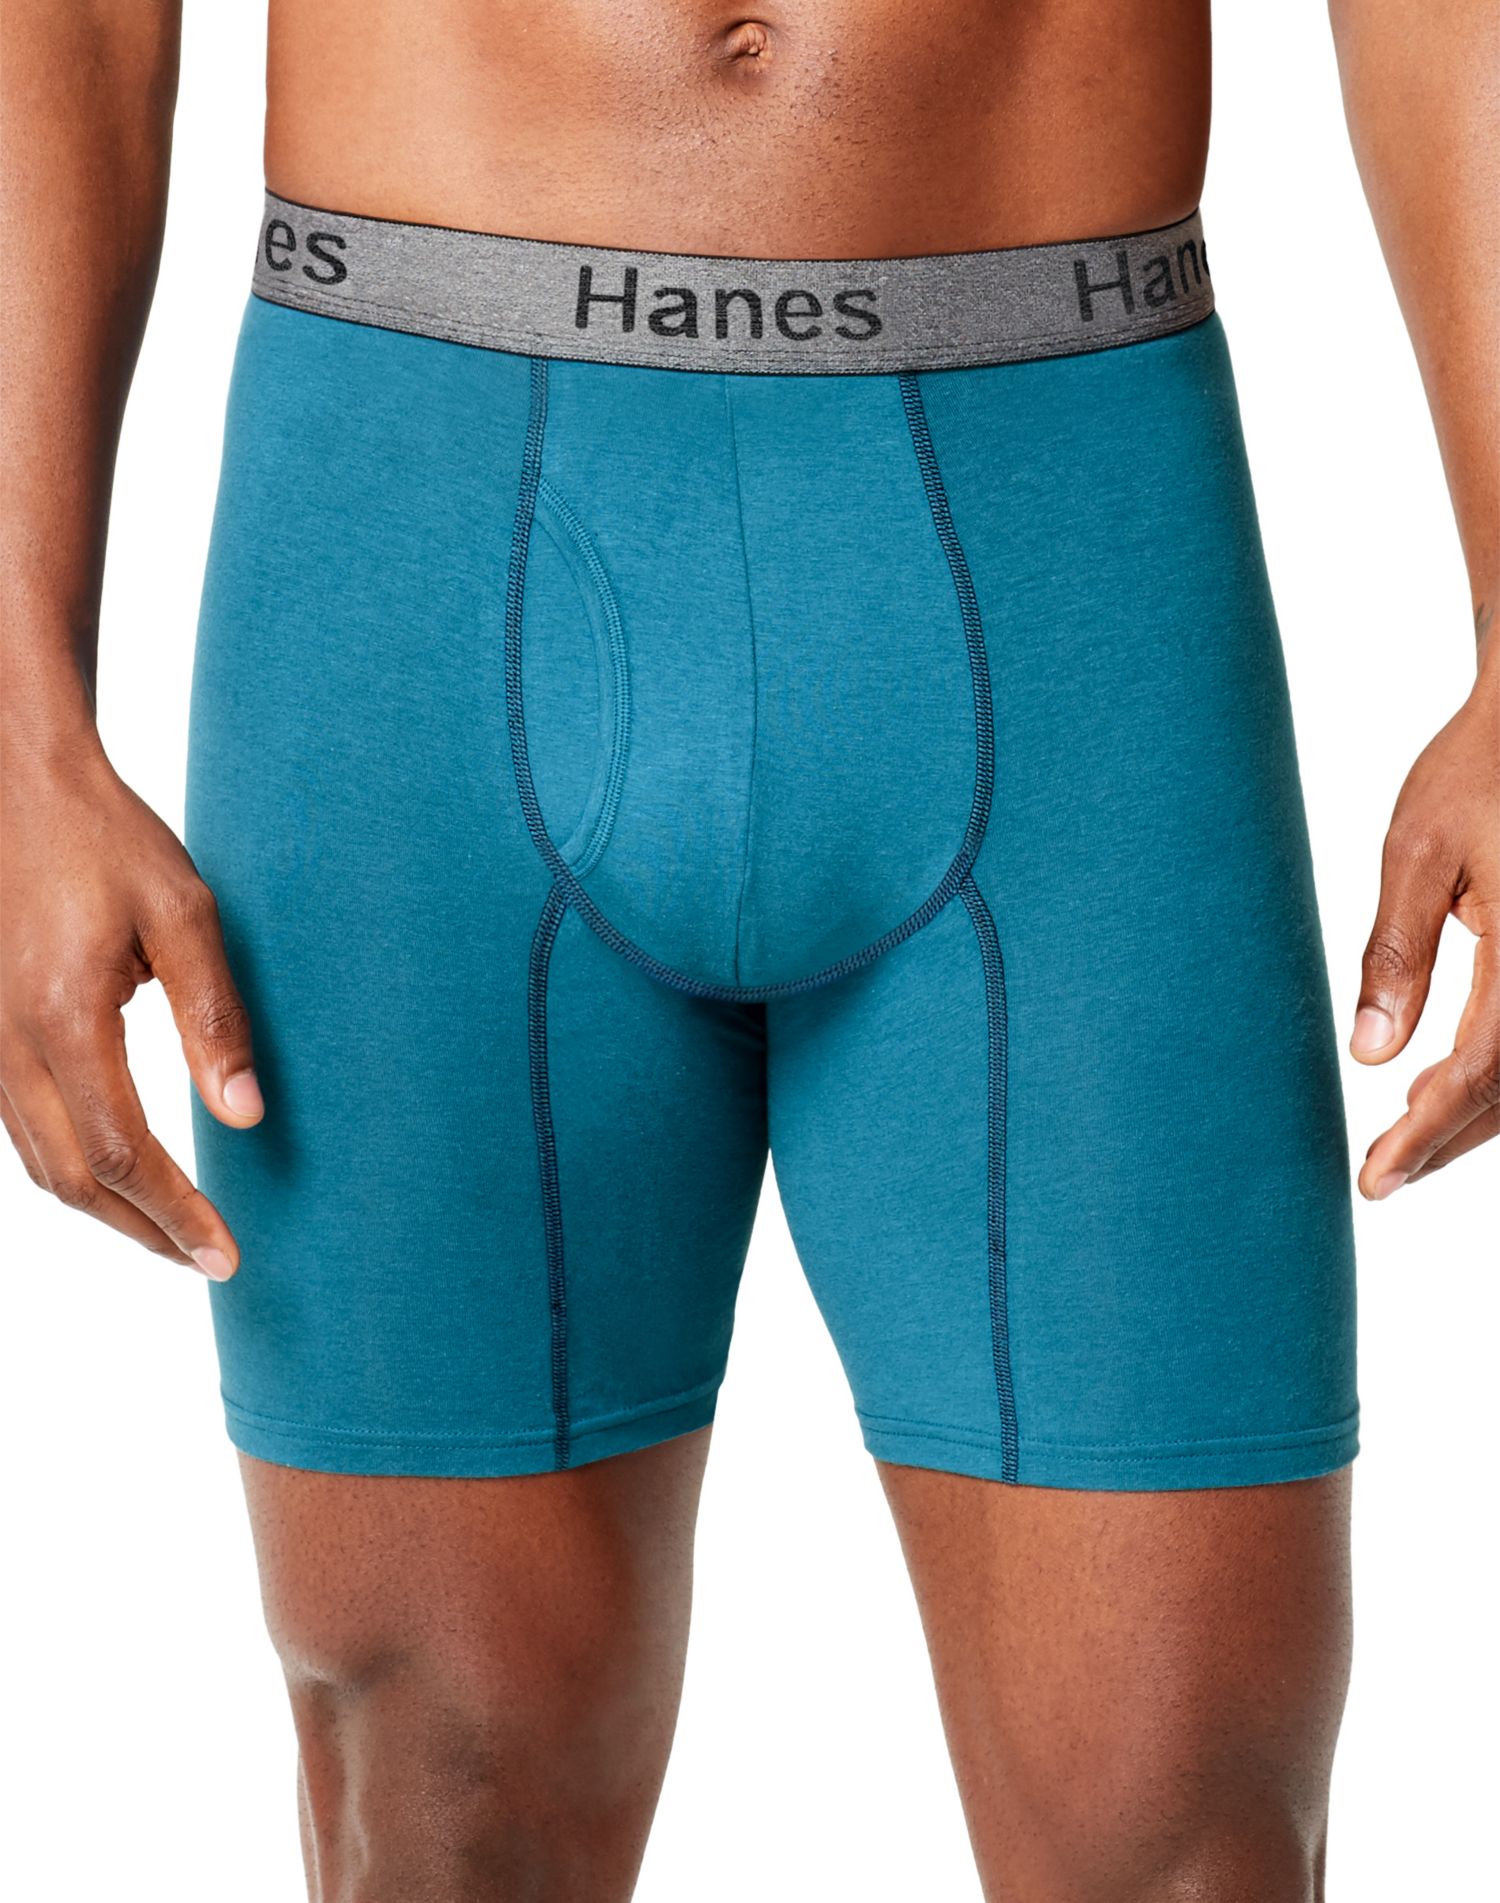 Hanes Men's Comfort Flex Fit Total Support Pouch Boxer Briefs 3Pk